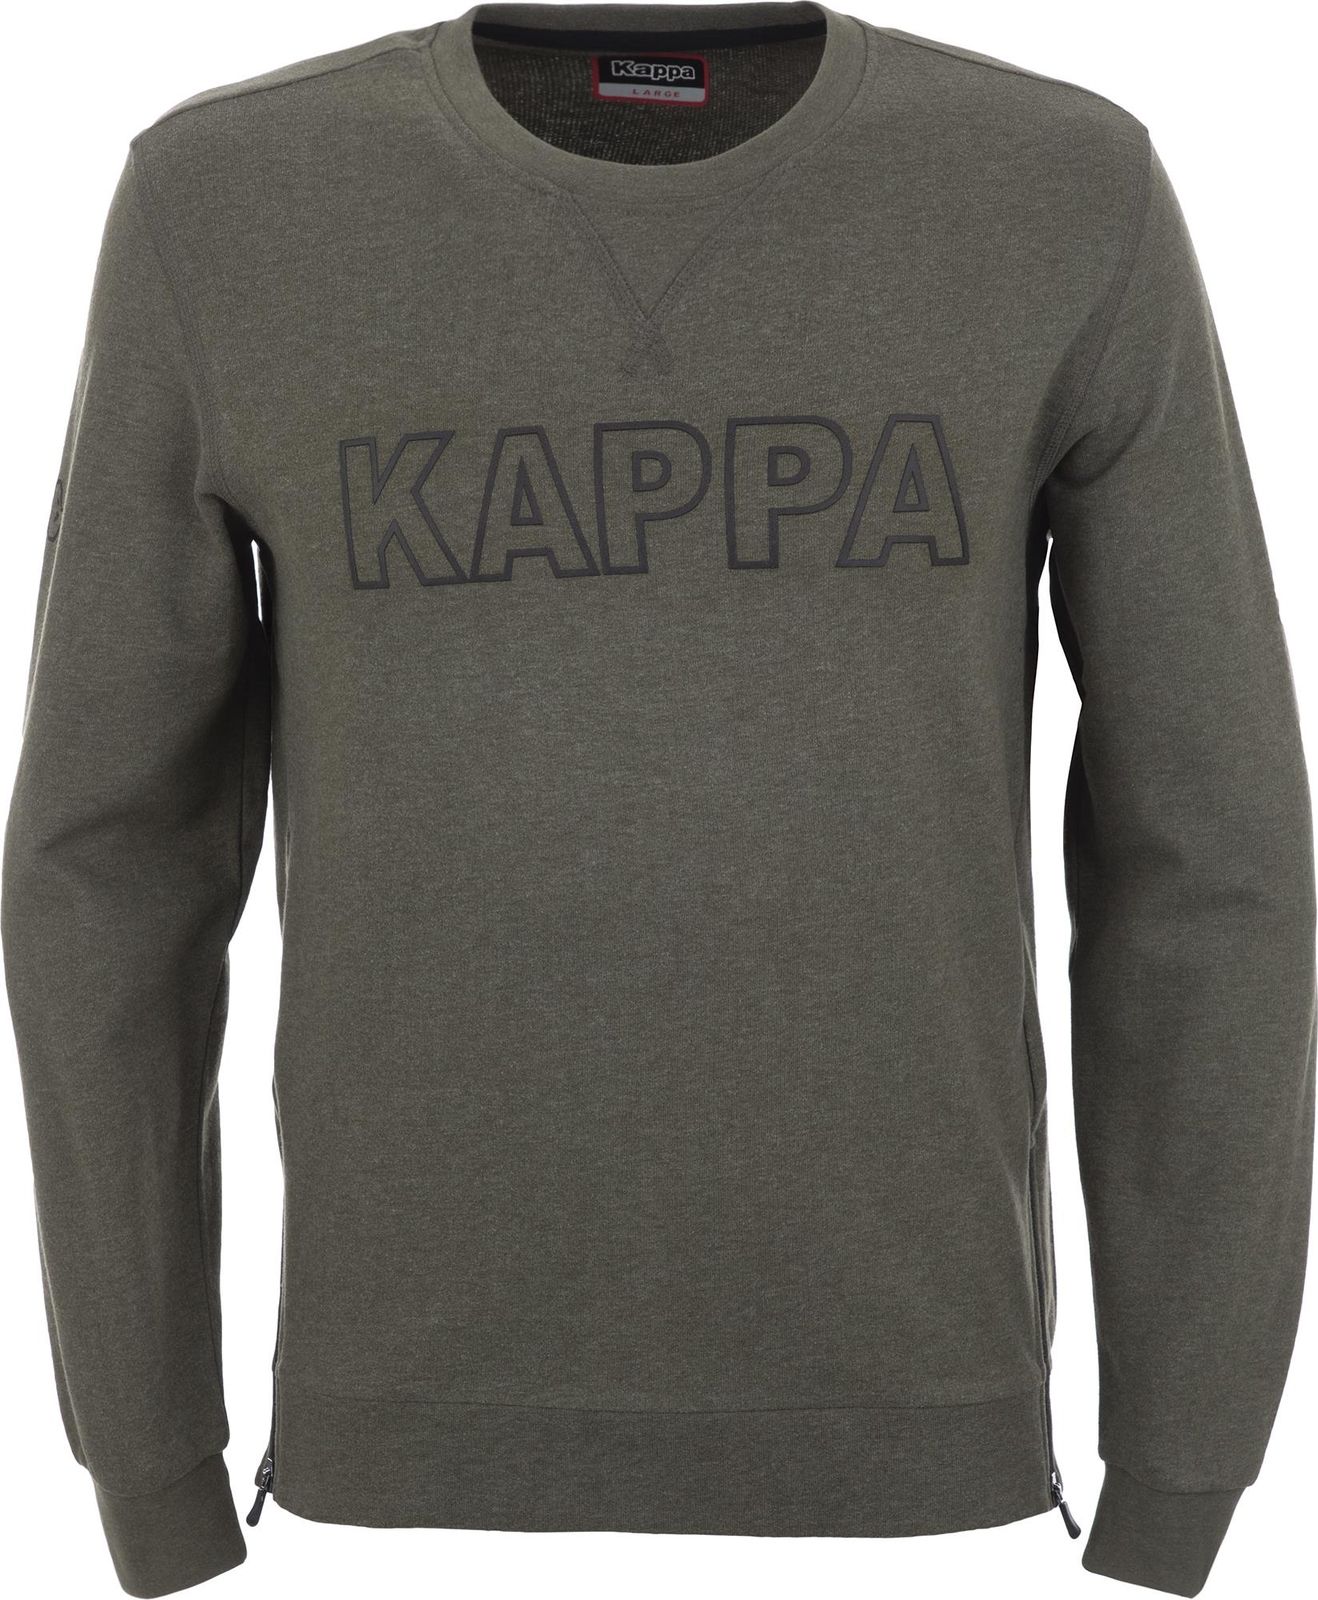   Kappa Men's Jumper, : -. 304IDL0-5U.  XL (52)